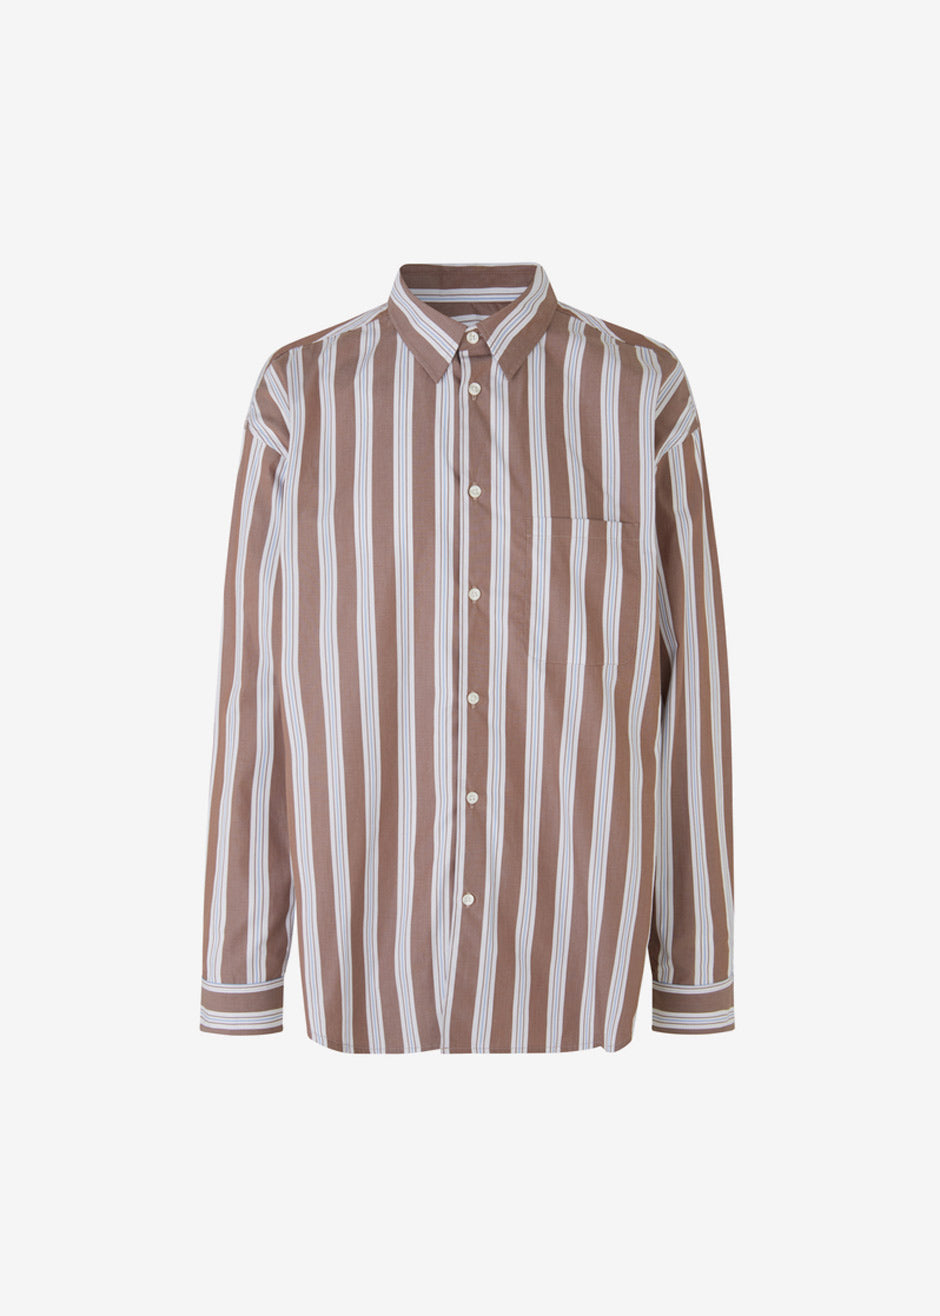 Samsøe & Samsøe Marley Shirt - Brown Stripe - 11